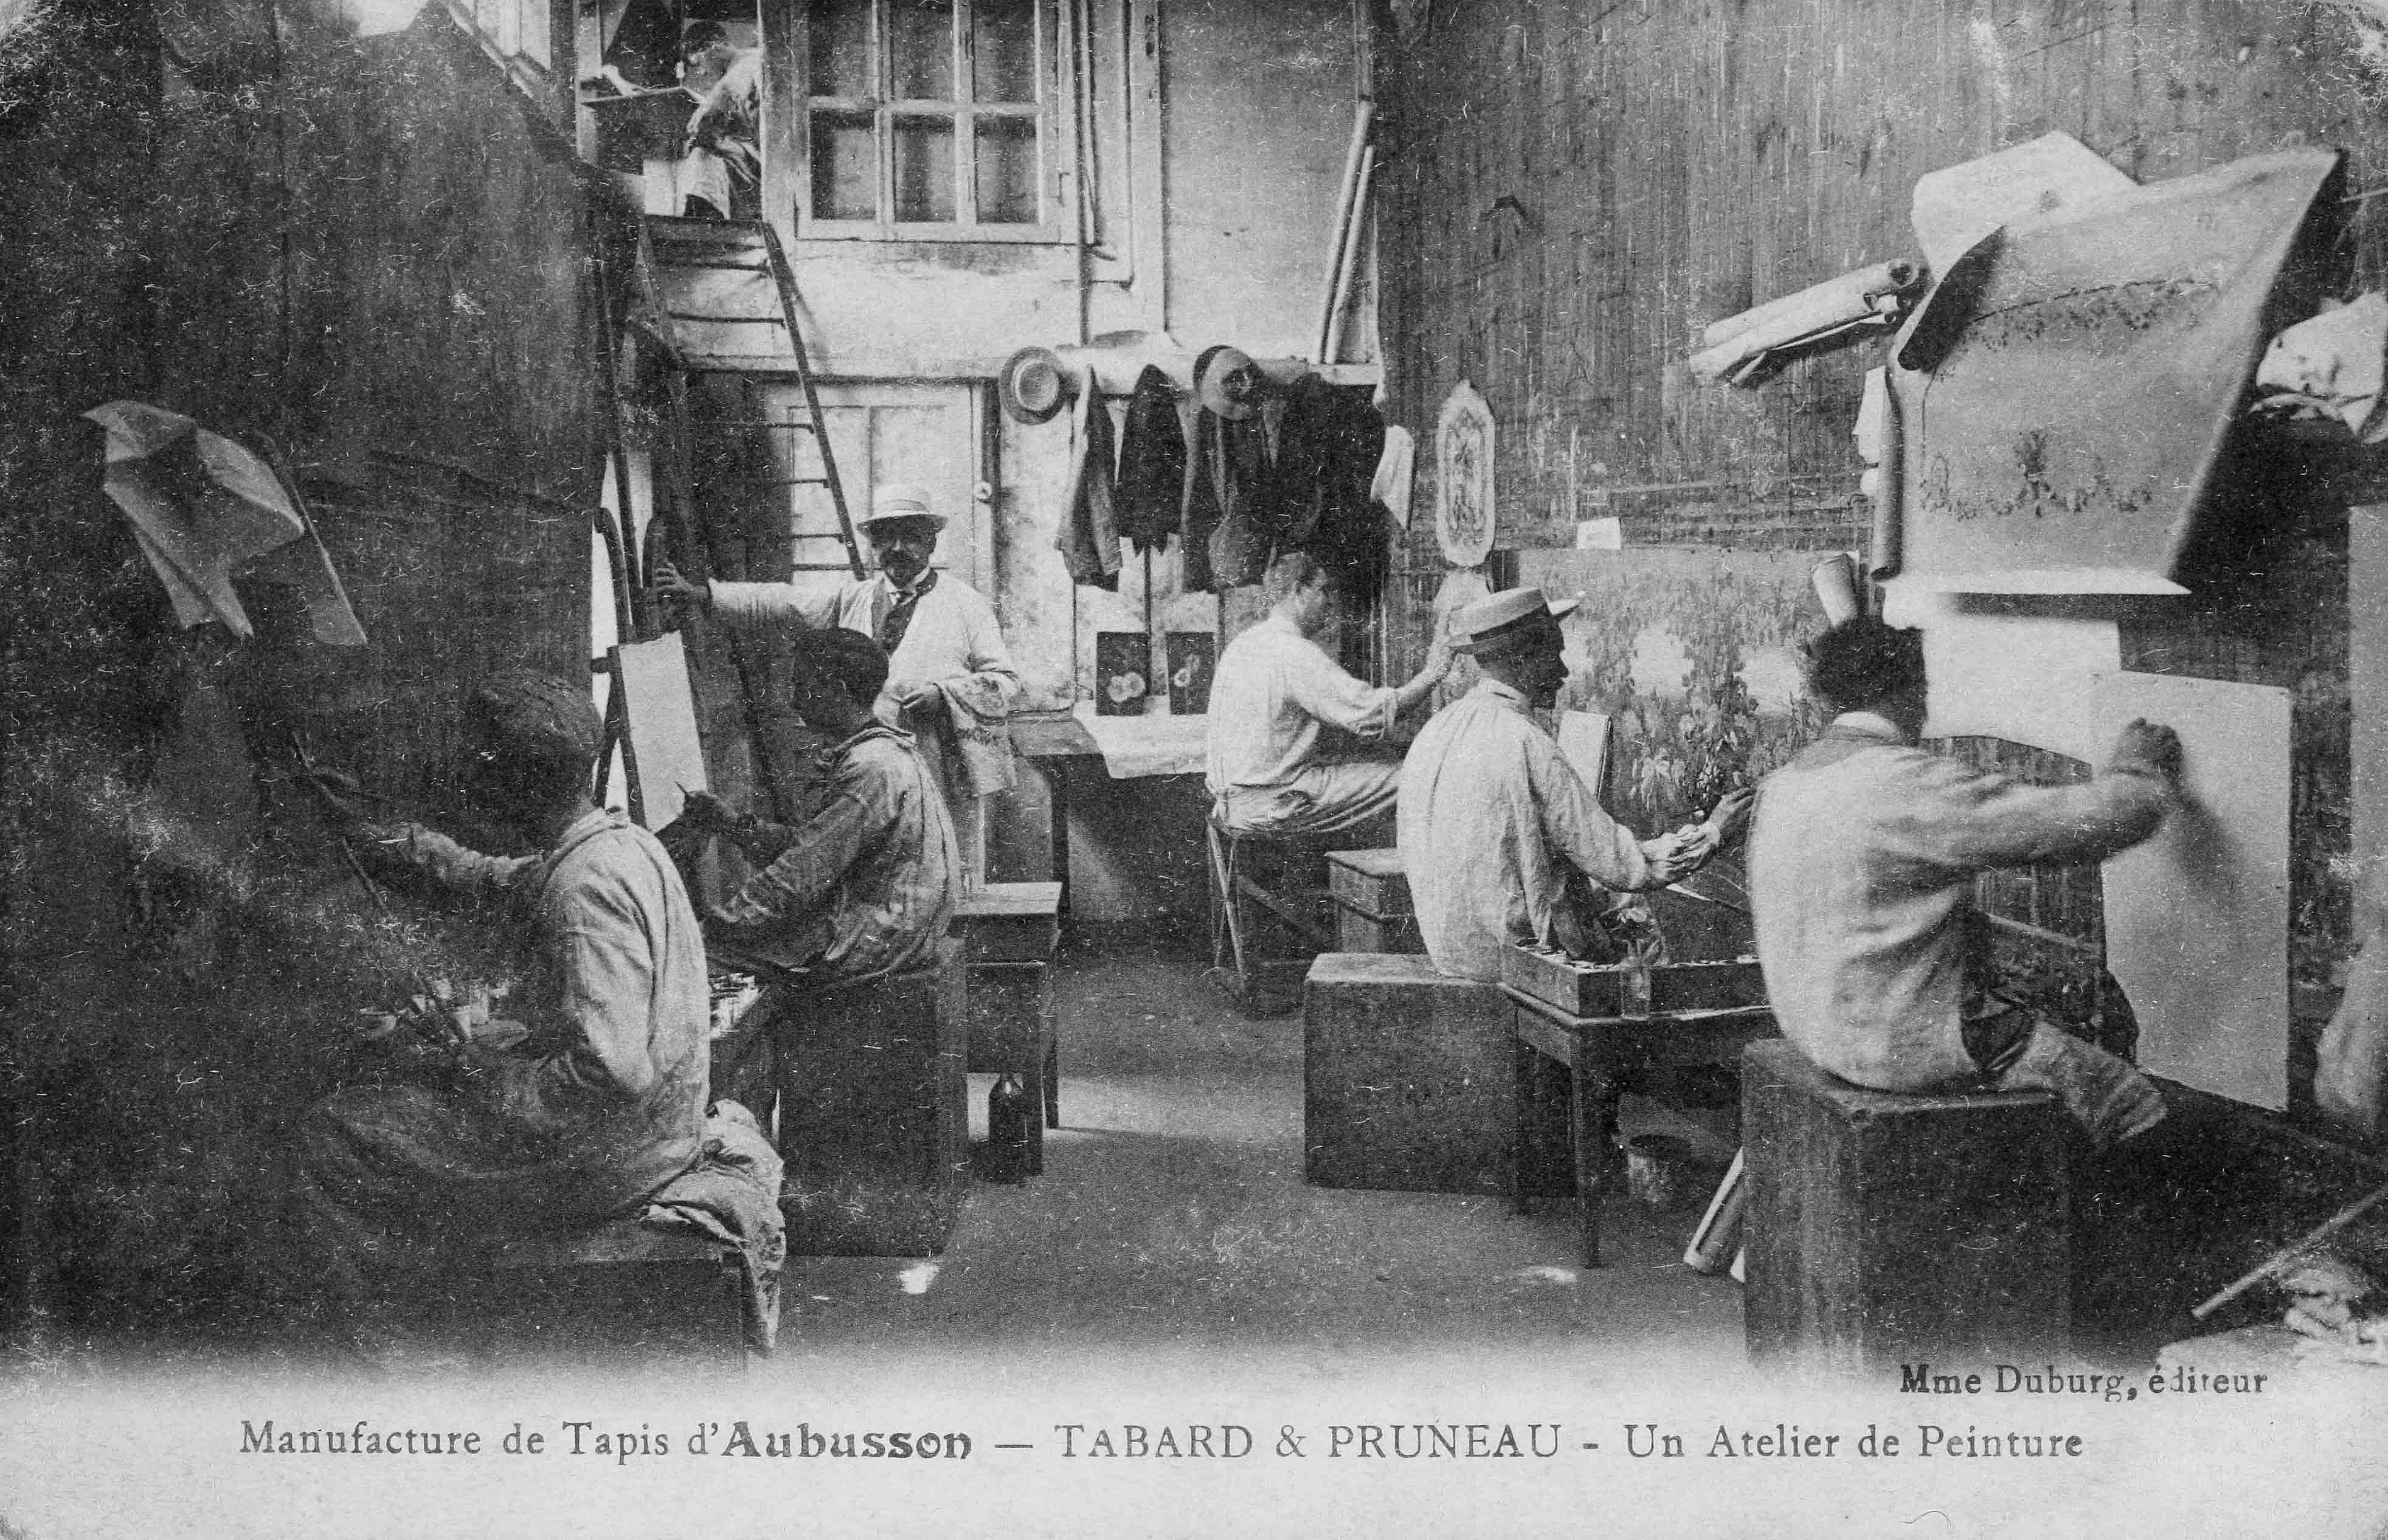 Carte postale (1er quart 20e siècle) : un atelier de peinture de la manufacture Tabard et Pruneau (Aubusson, centre de documentation du Musée départemental de la Tapisserie)